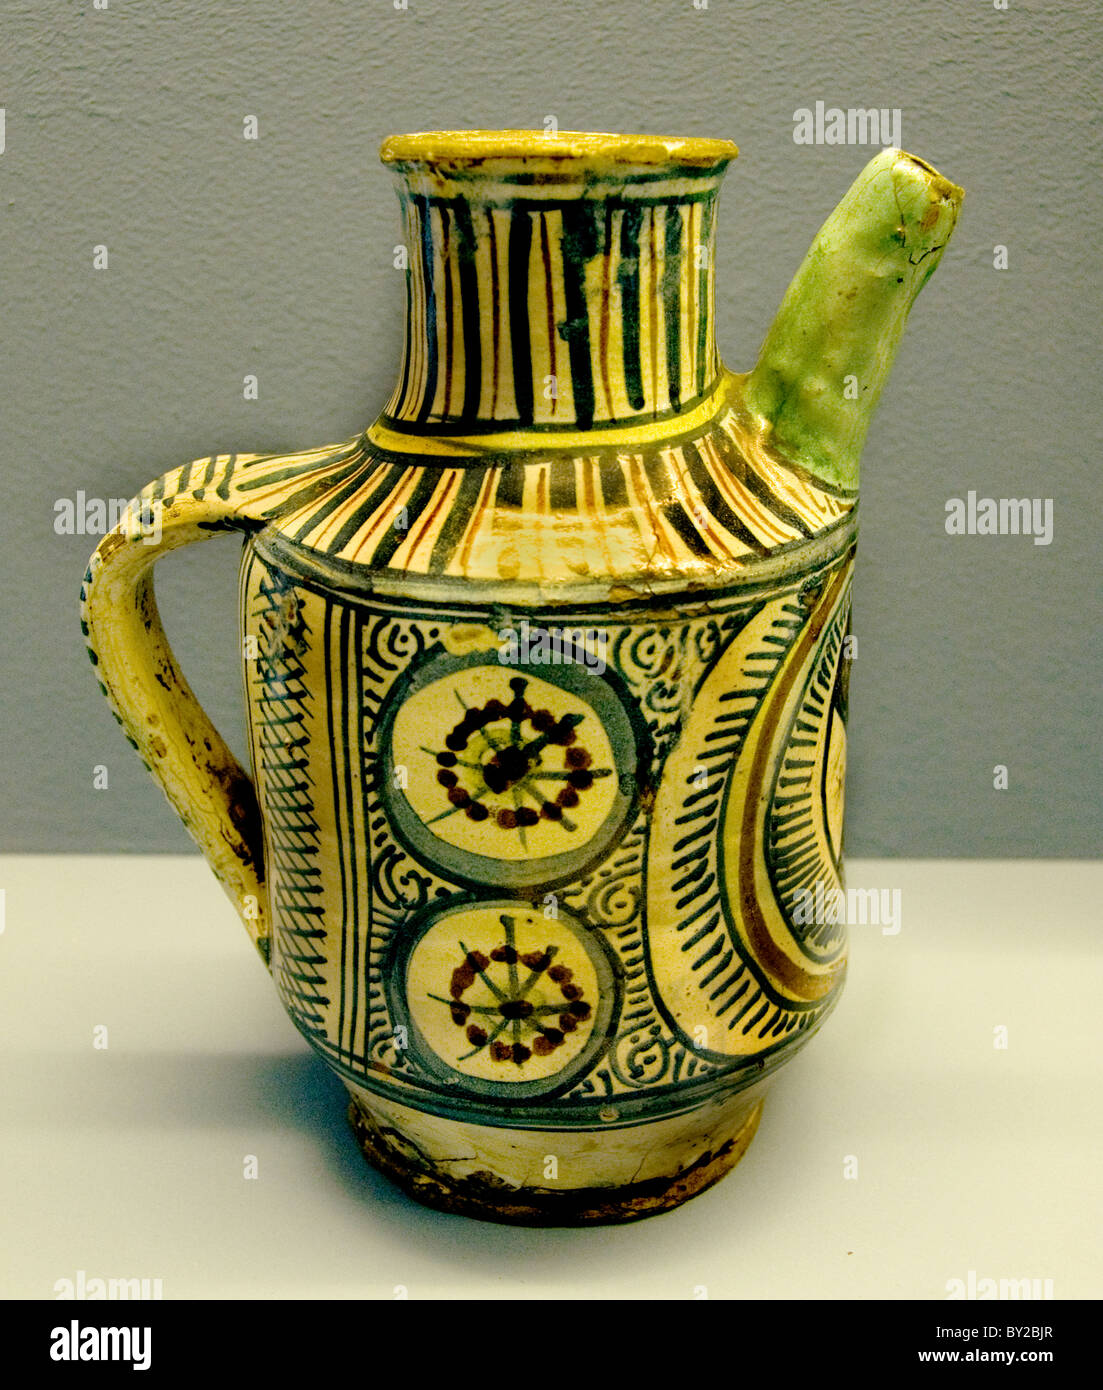 Brocca Sirup 1450 Firenze Toscana Italia Italiano ceramiche Maiolica Medioevo medievale Foto Stock